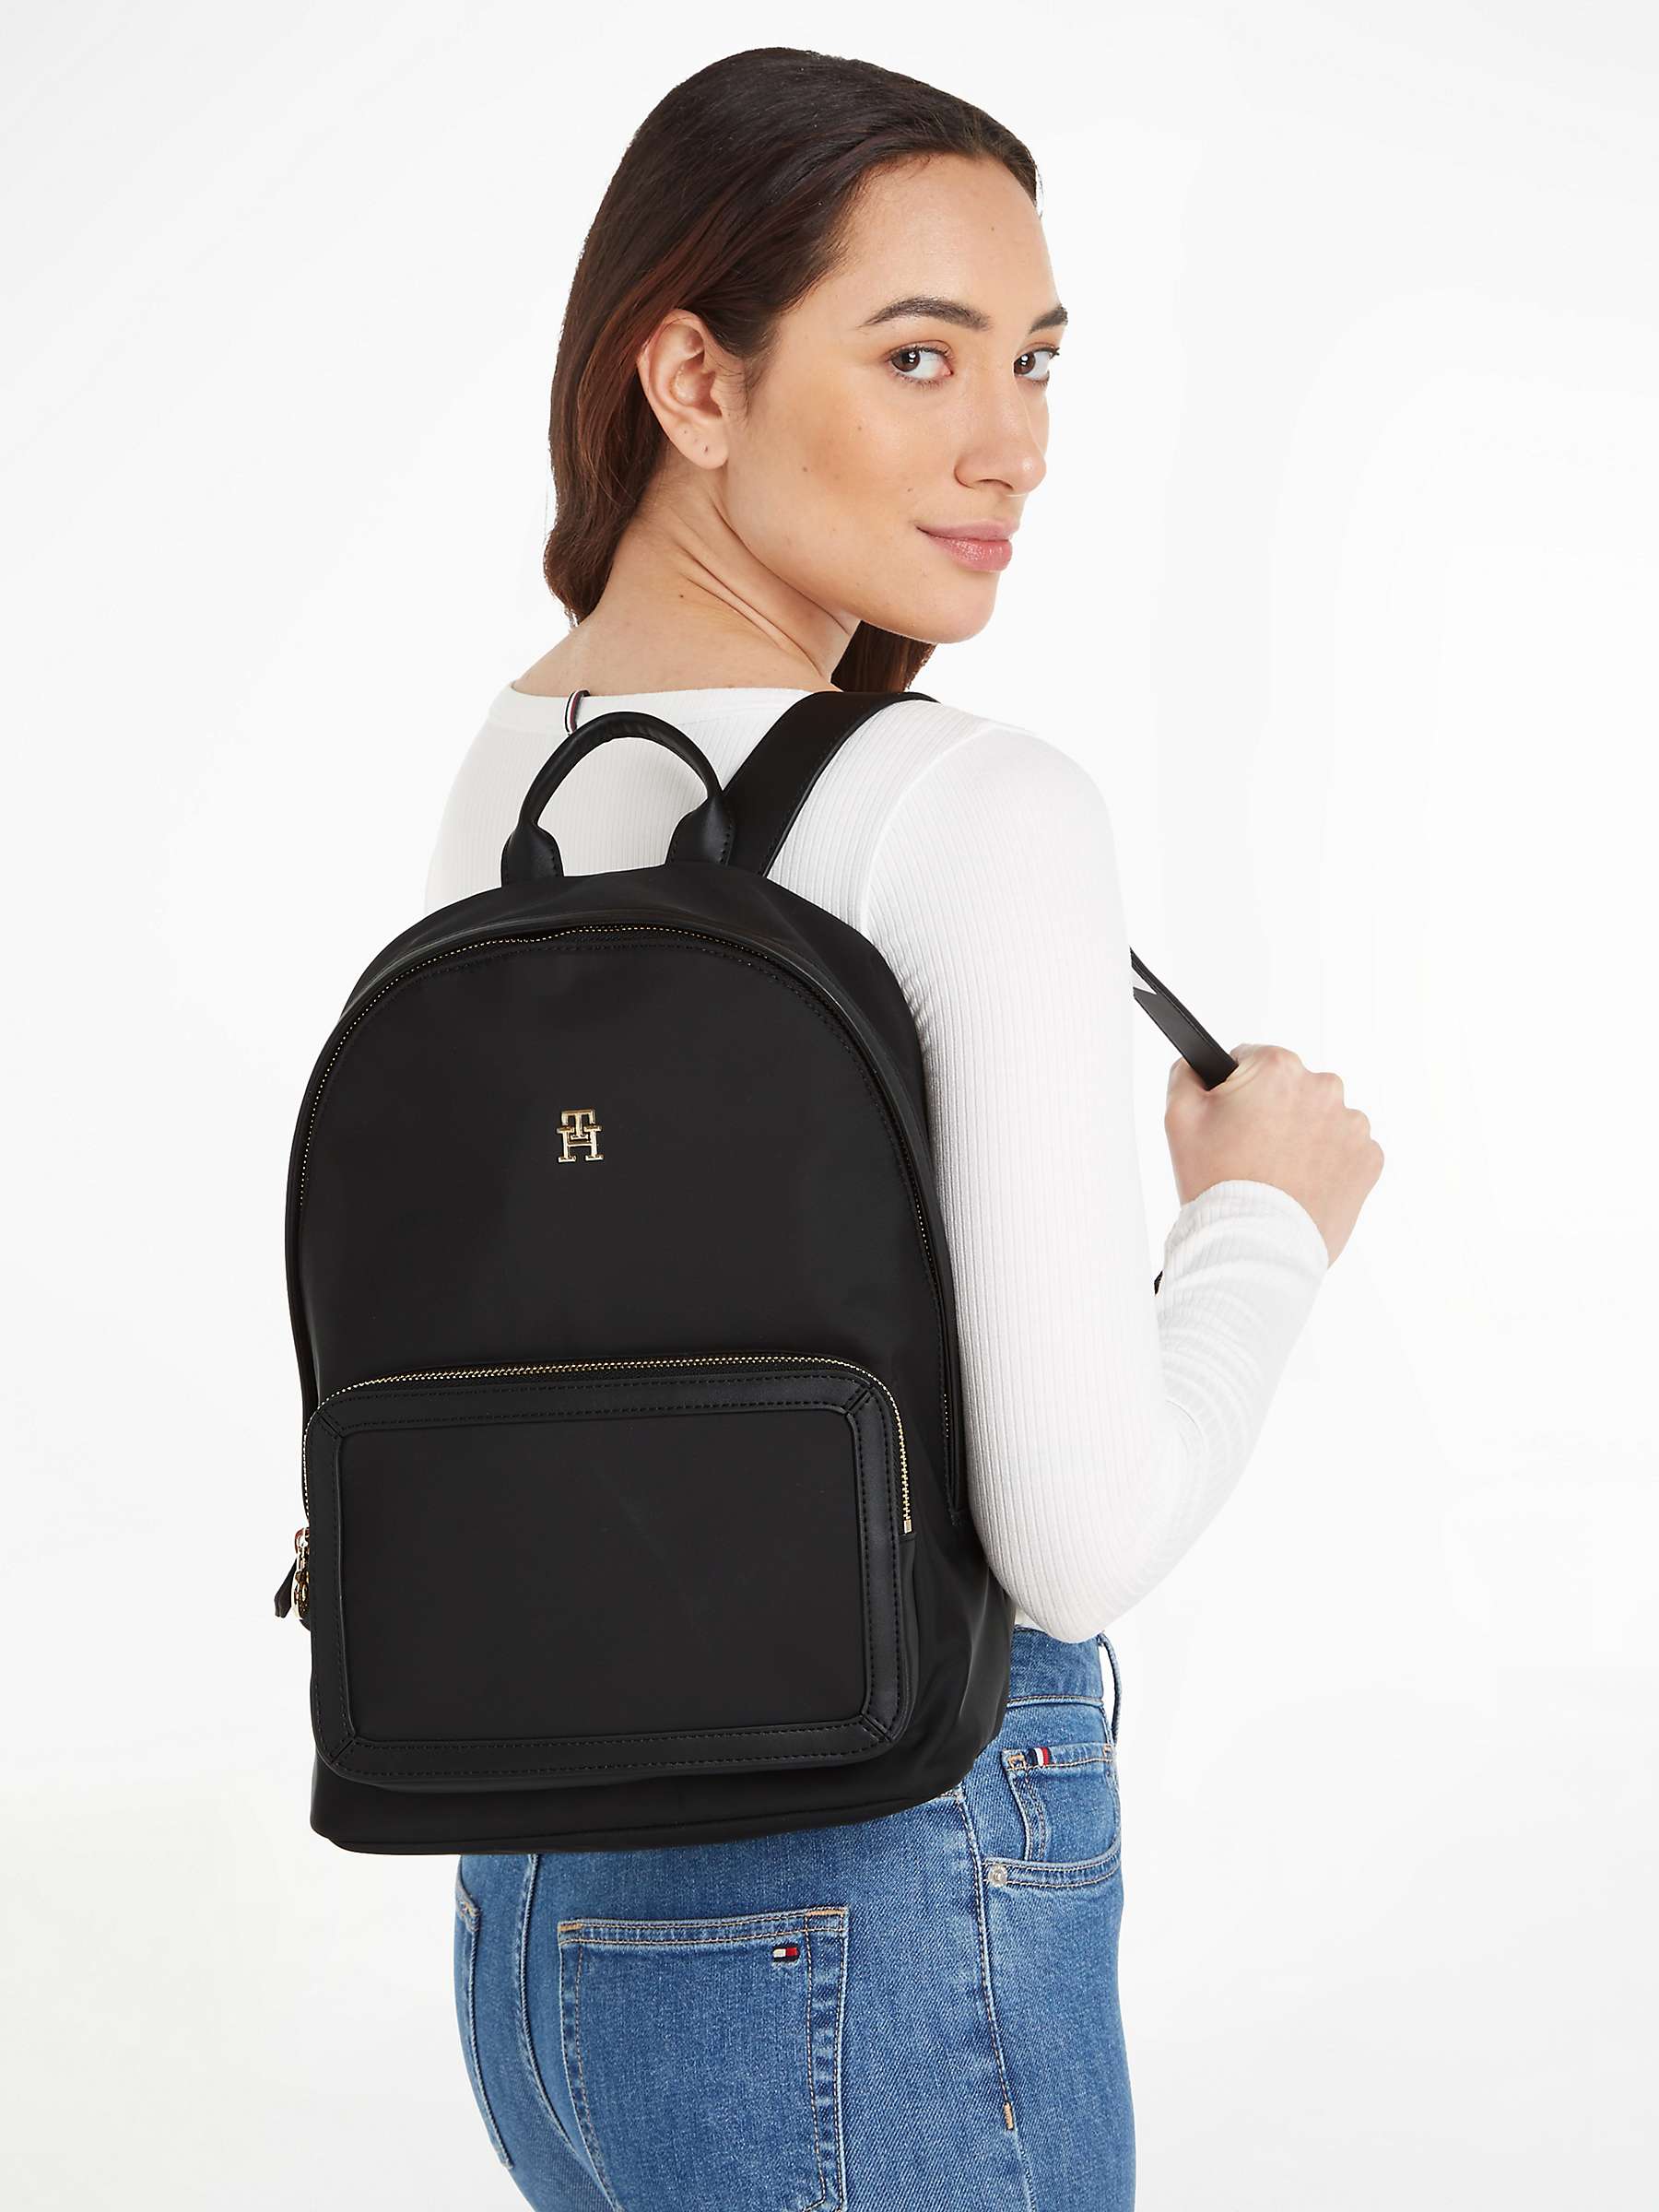 Buy Tommy Hilfiger Essential Backpack, Black Online at johnlewis.com